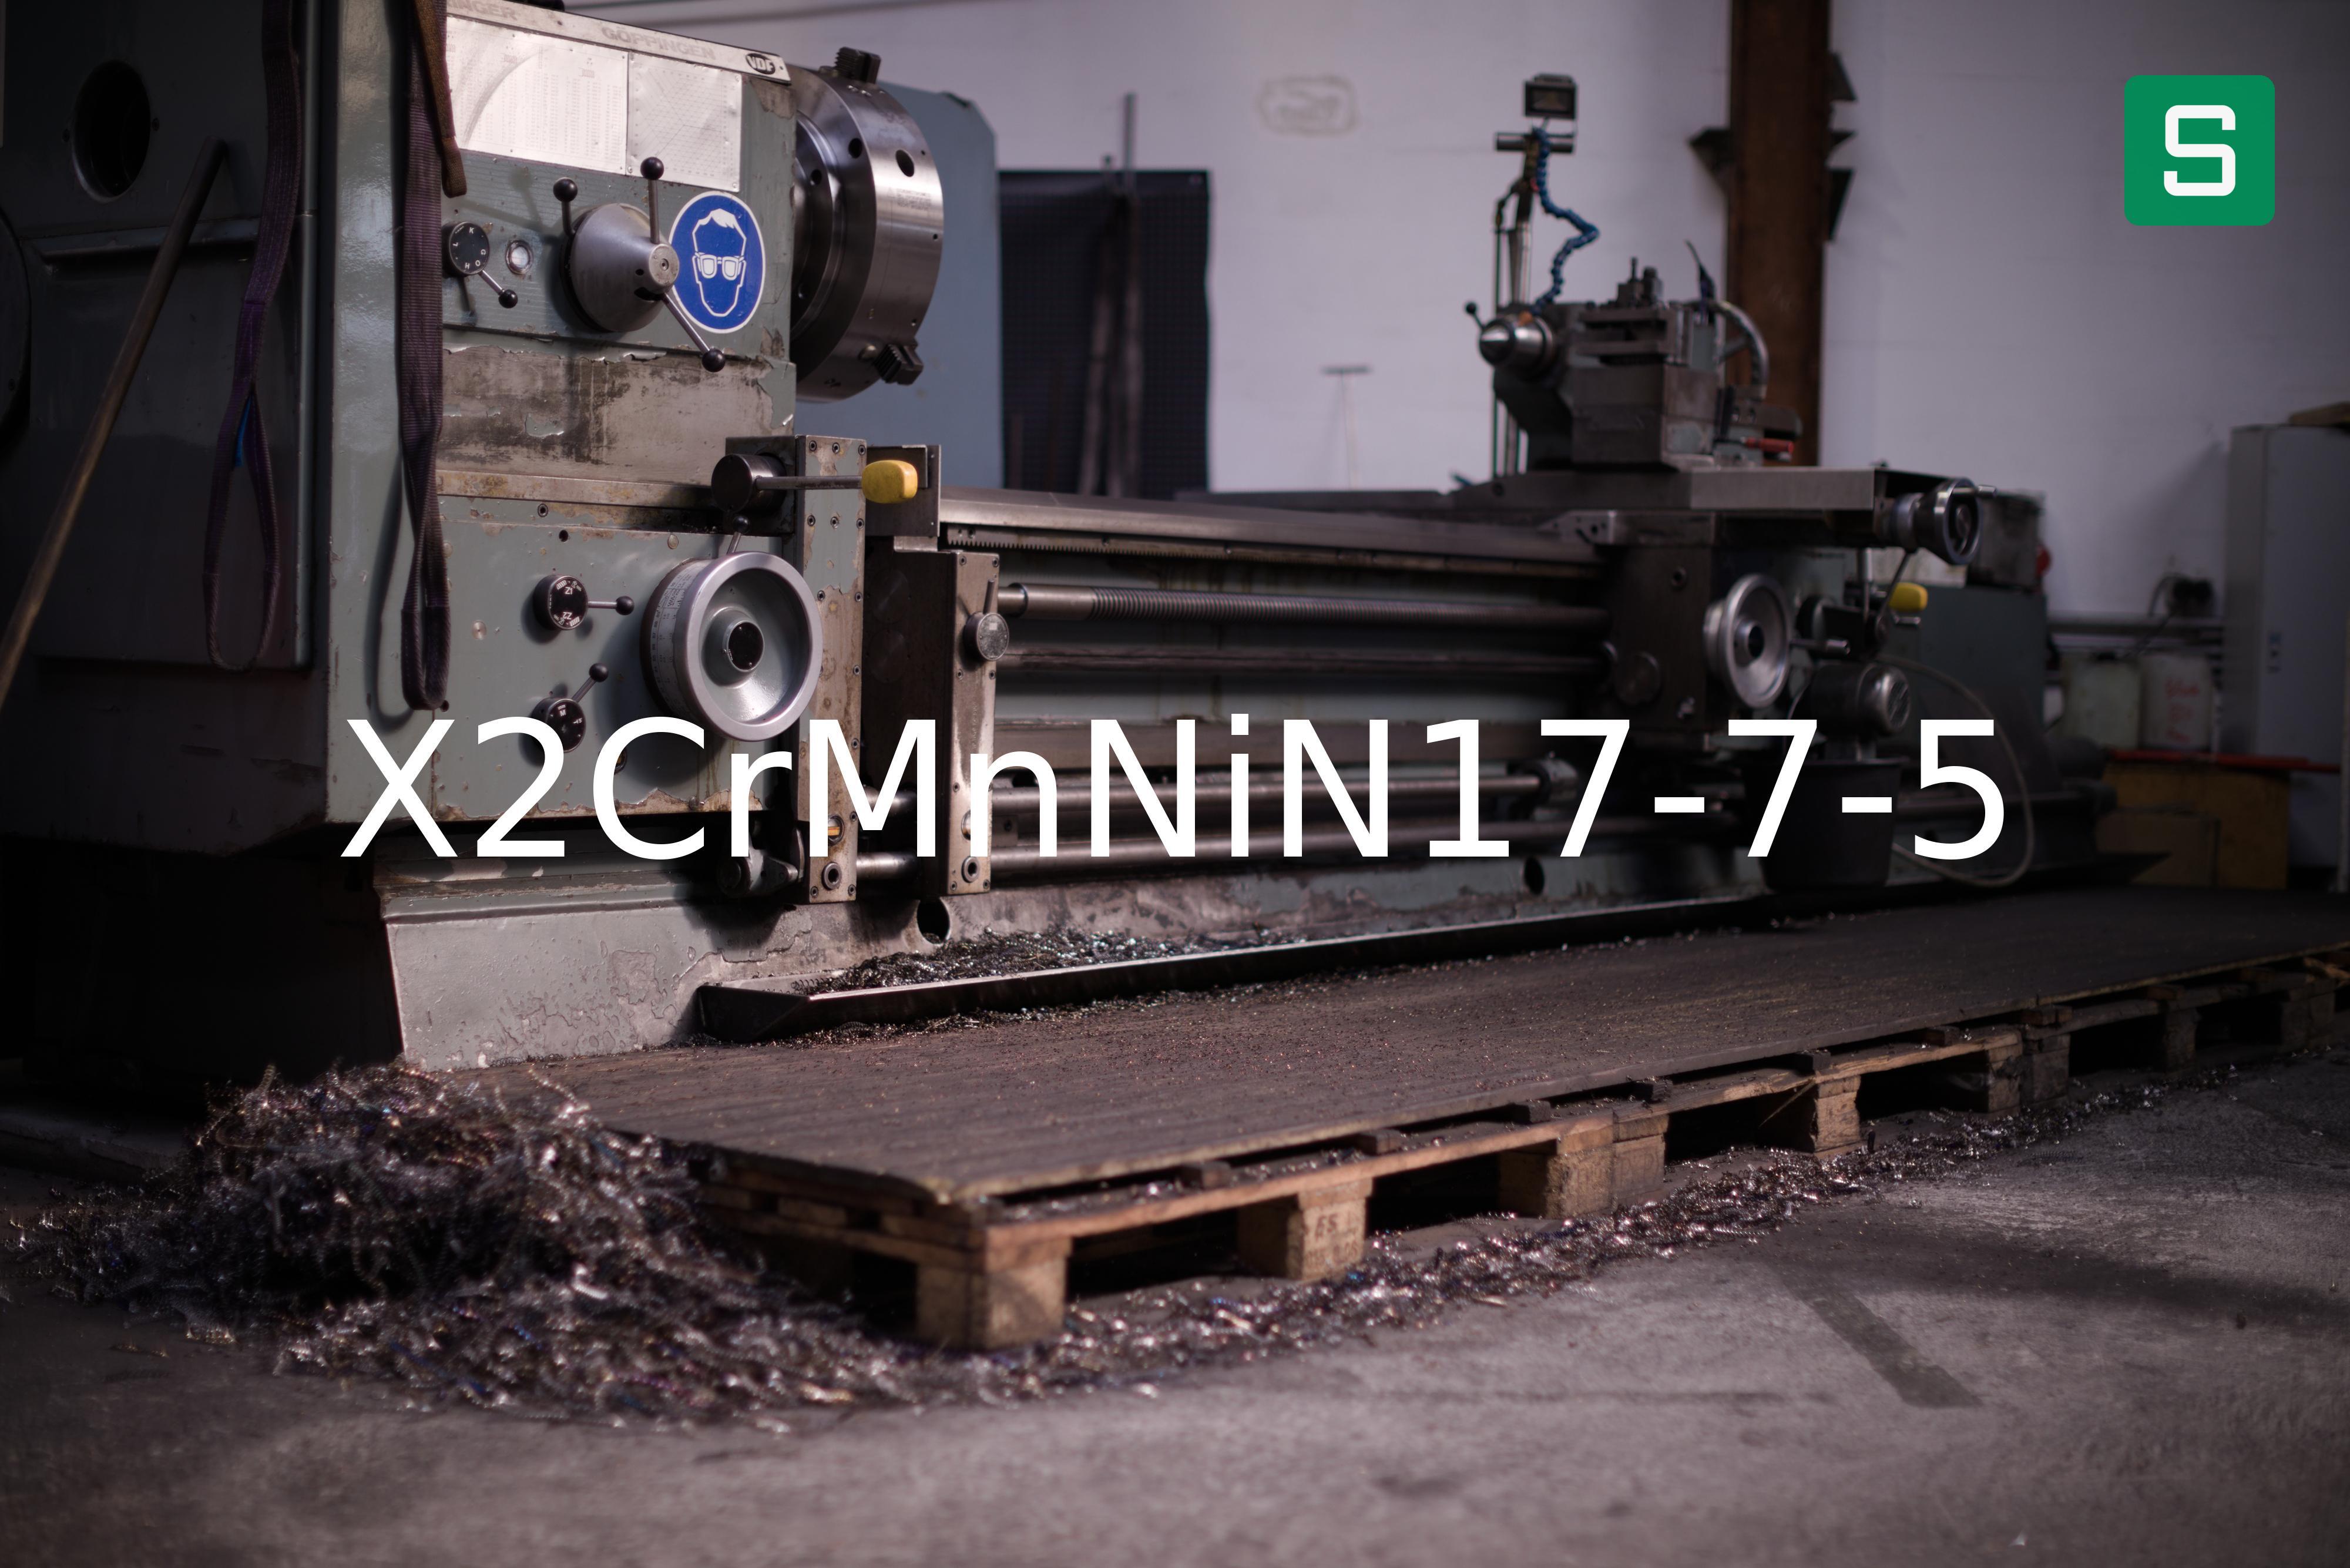 Steel Material: X2CrMnNiN17-7-5